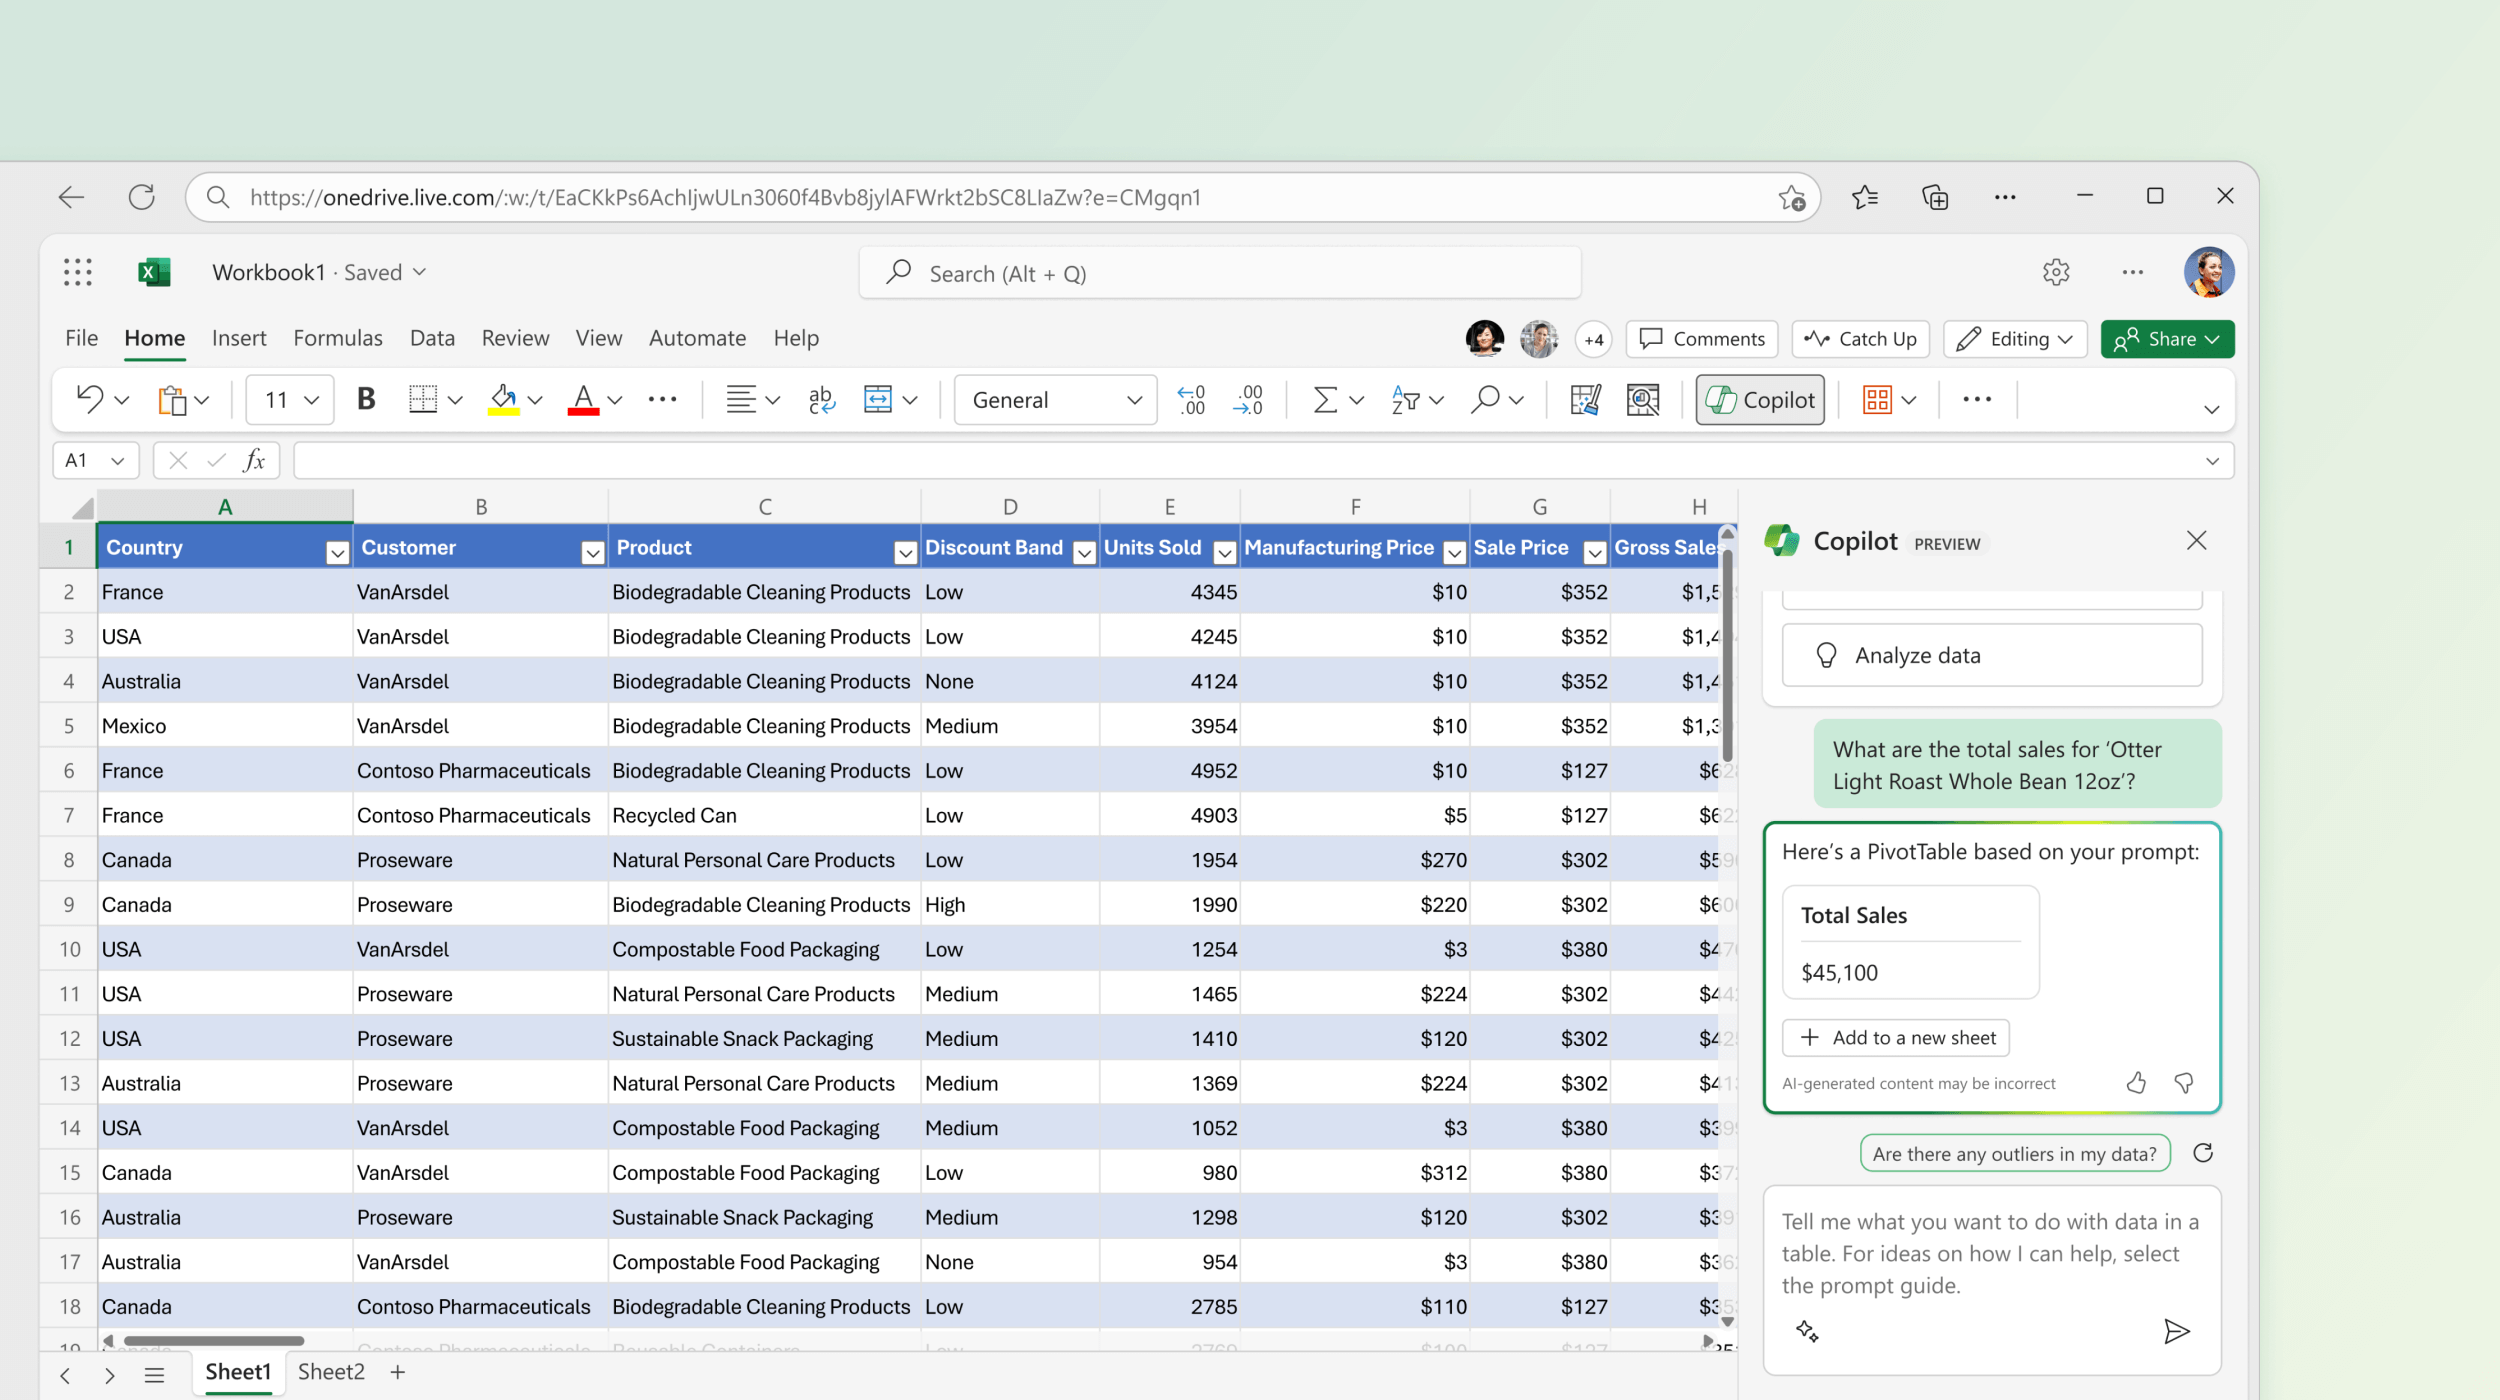 สกรีนช็อตแสดง Copilot ใน Excel ที่แนะนํา PivotTable โดยยึดตามข้อมูลที่มีอยู่